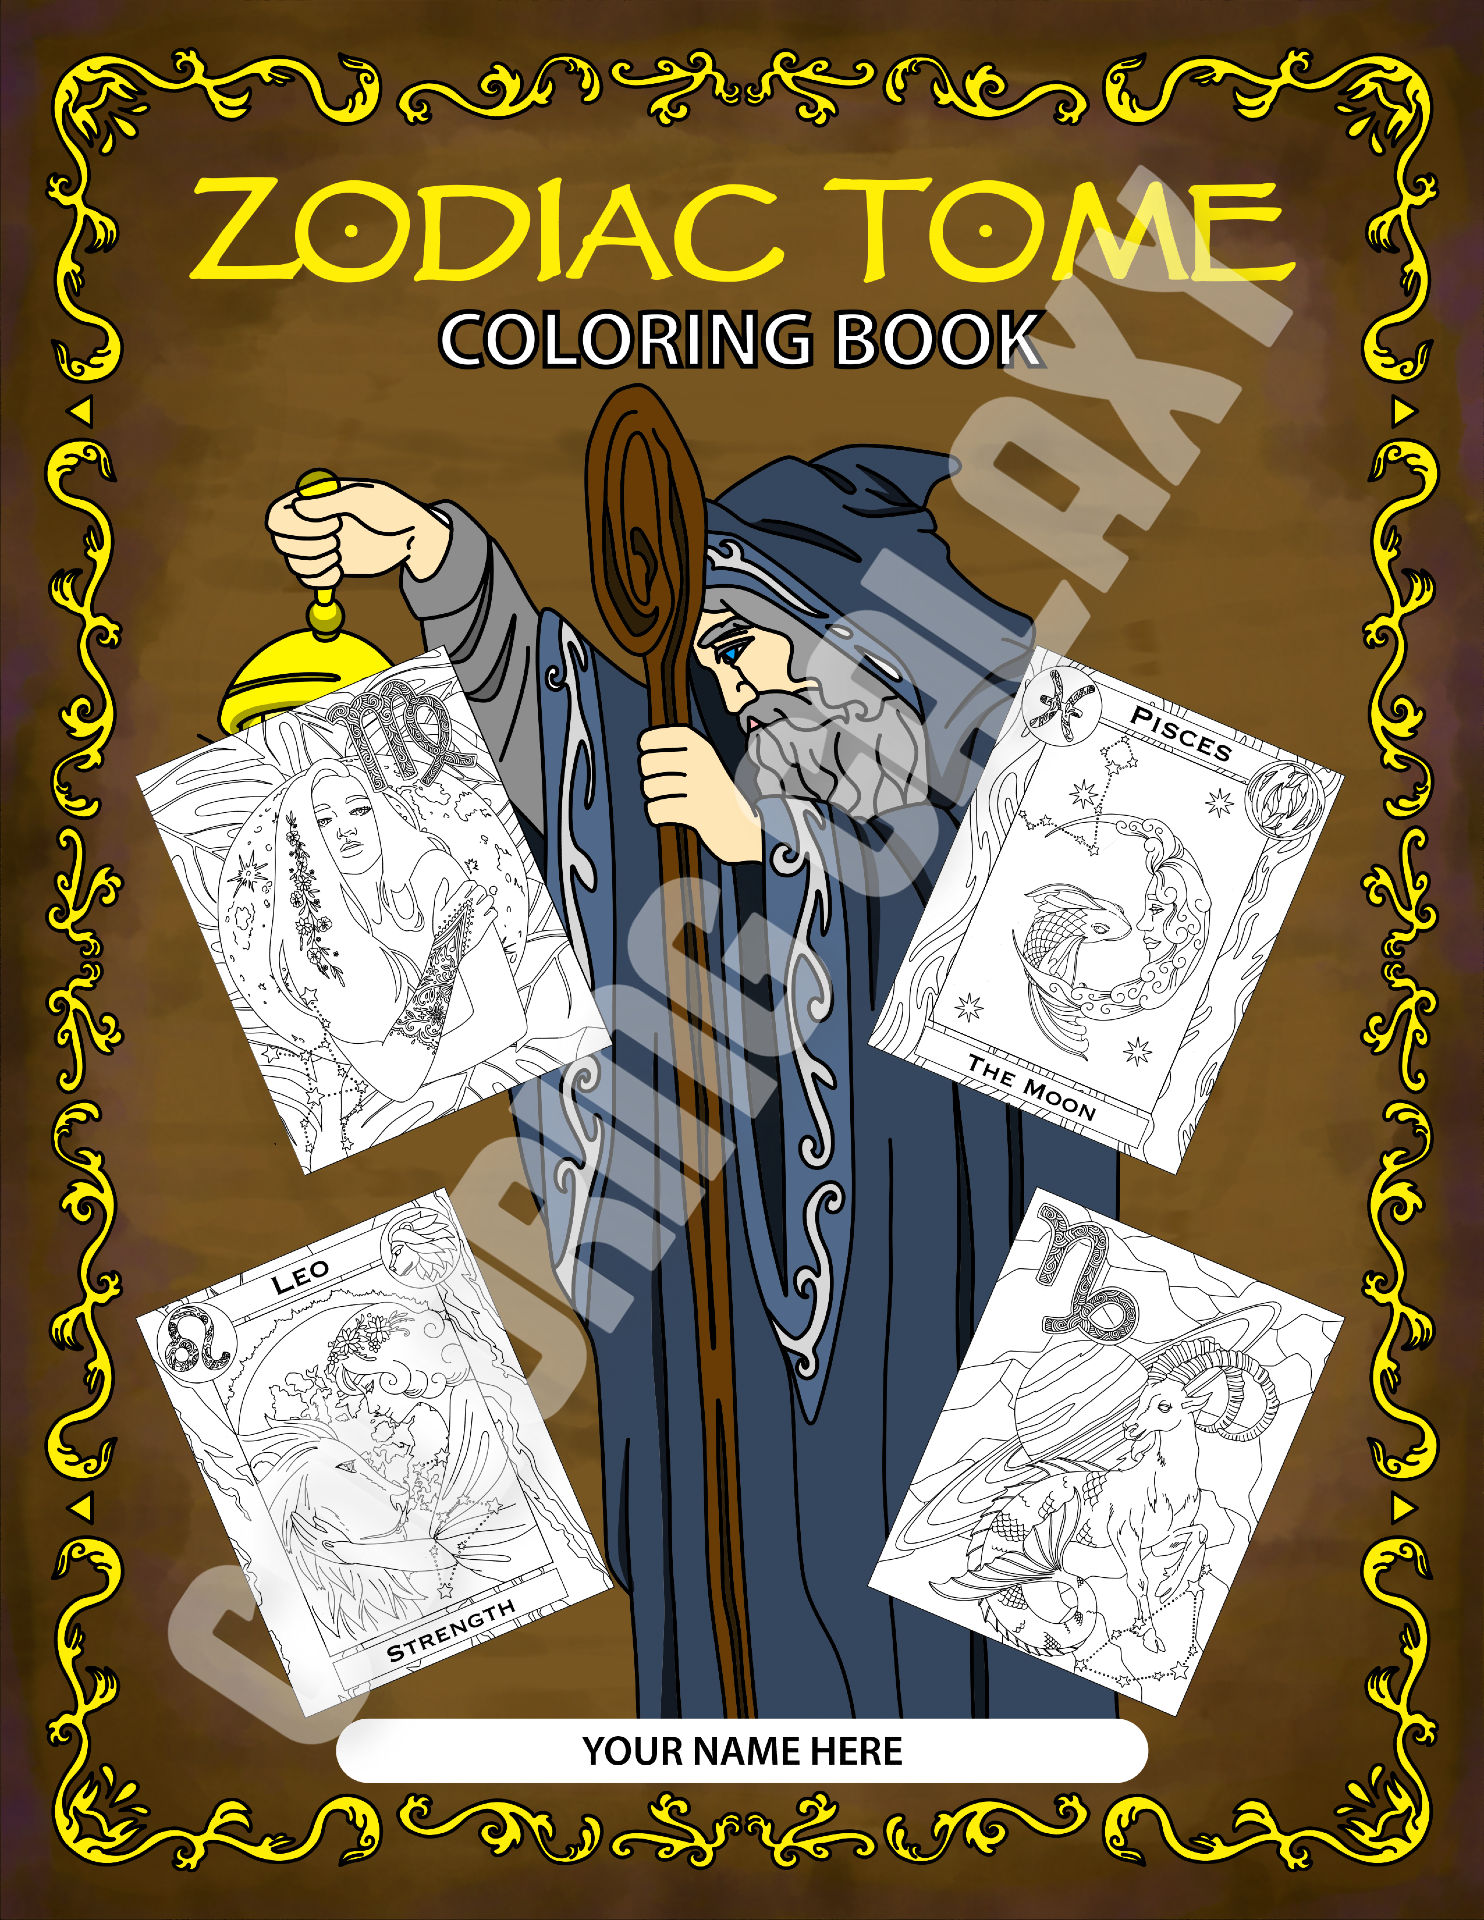 Zodiac Tome back cover colored